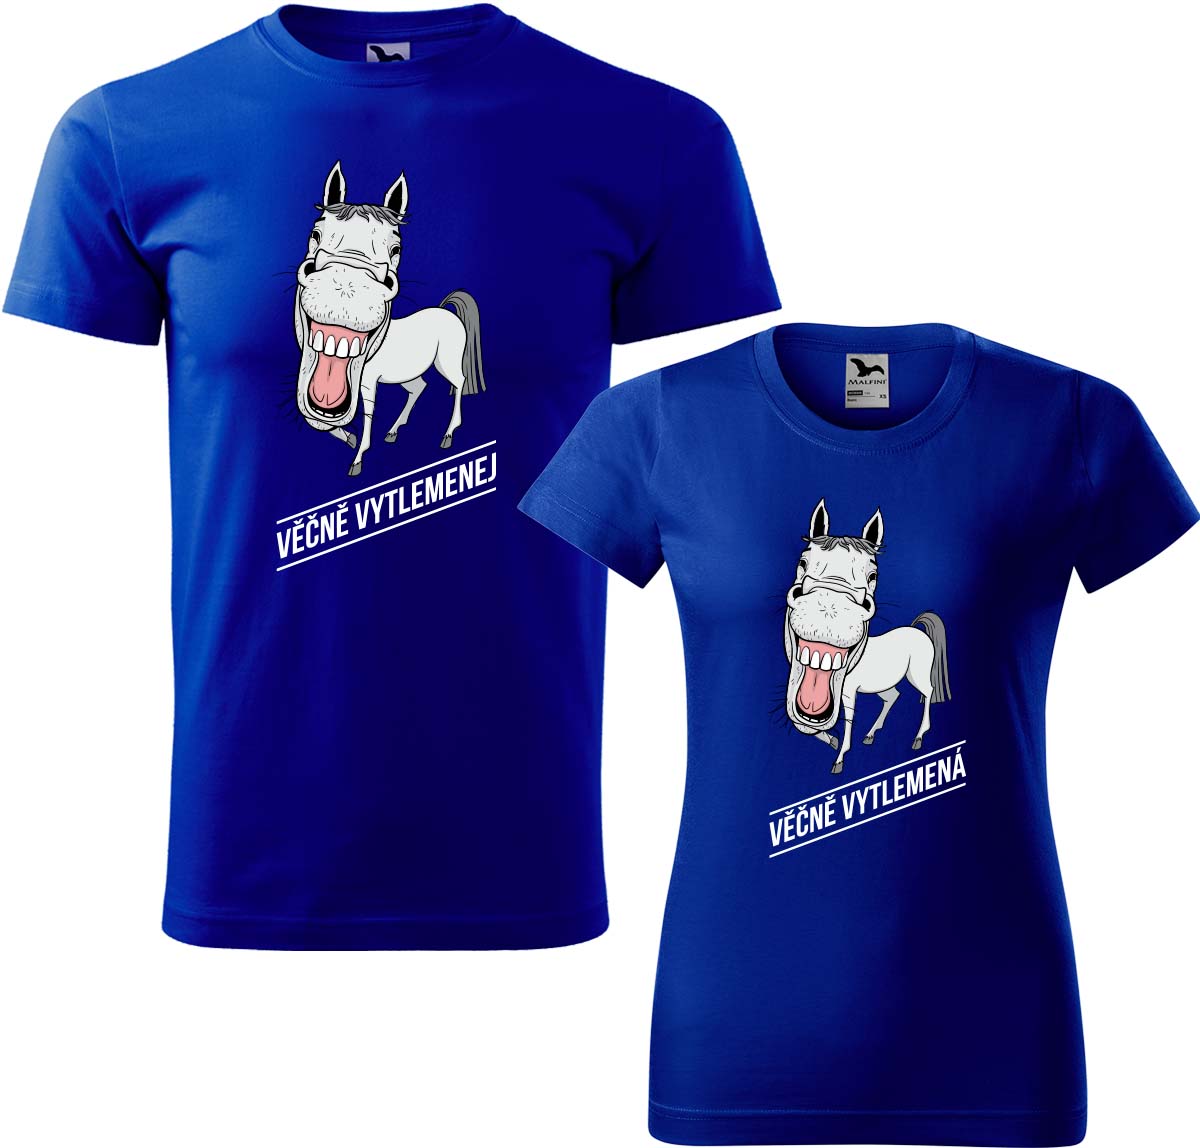 Trička pro páry - Věčně vytlemenej a věčně vytlemená Barva: Královská modrá (05), Velikost dámské tričko: S, Velikost pánské tričko: M